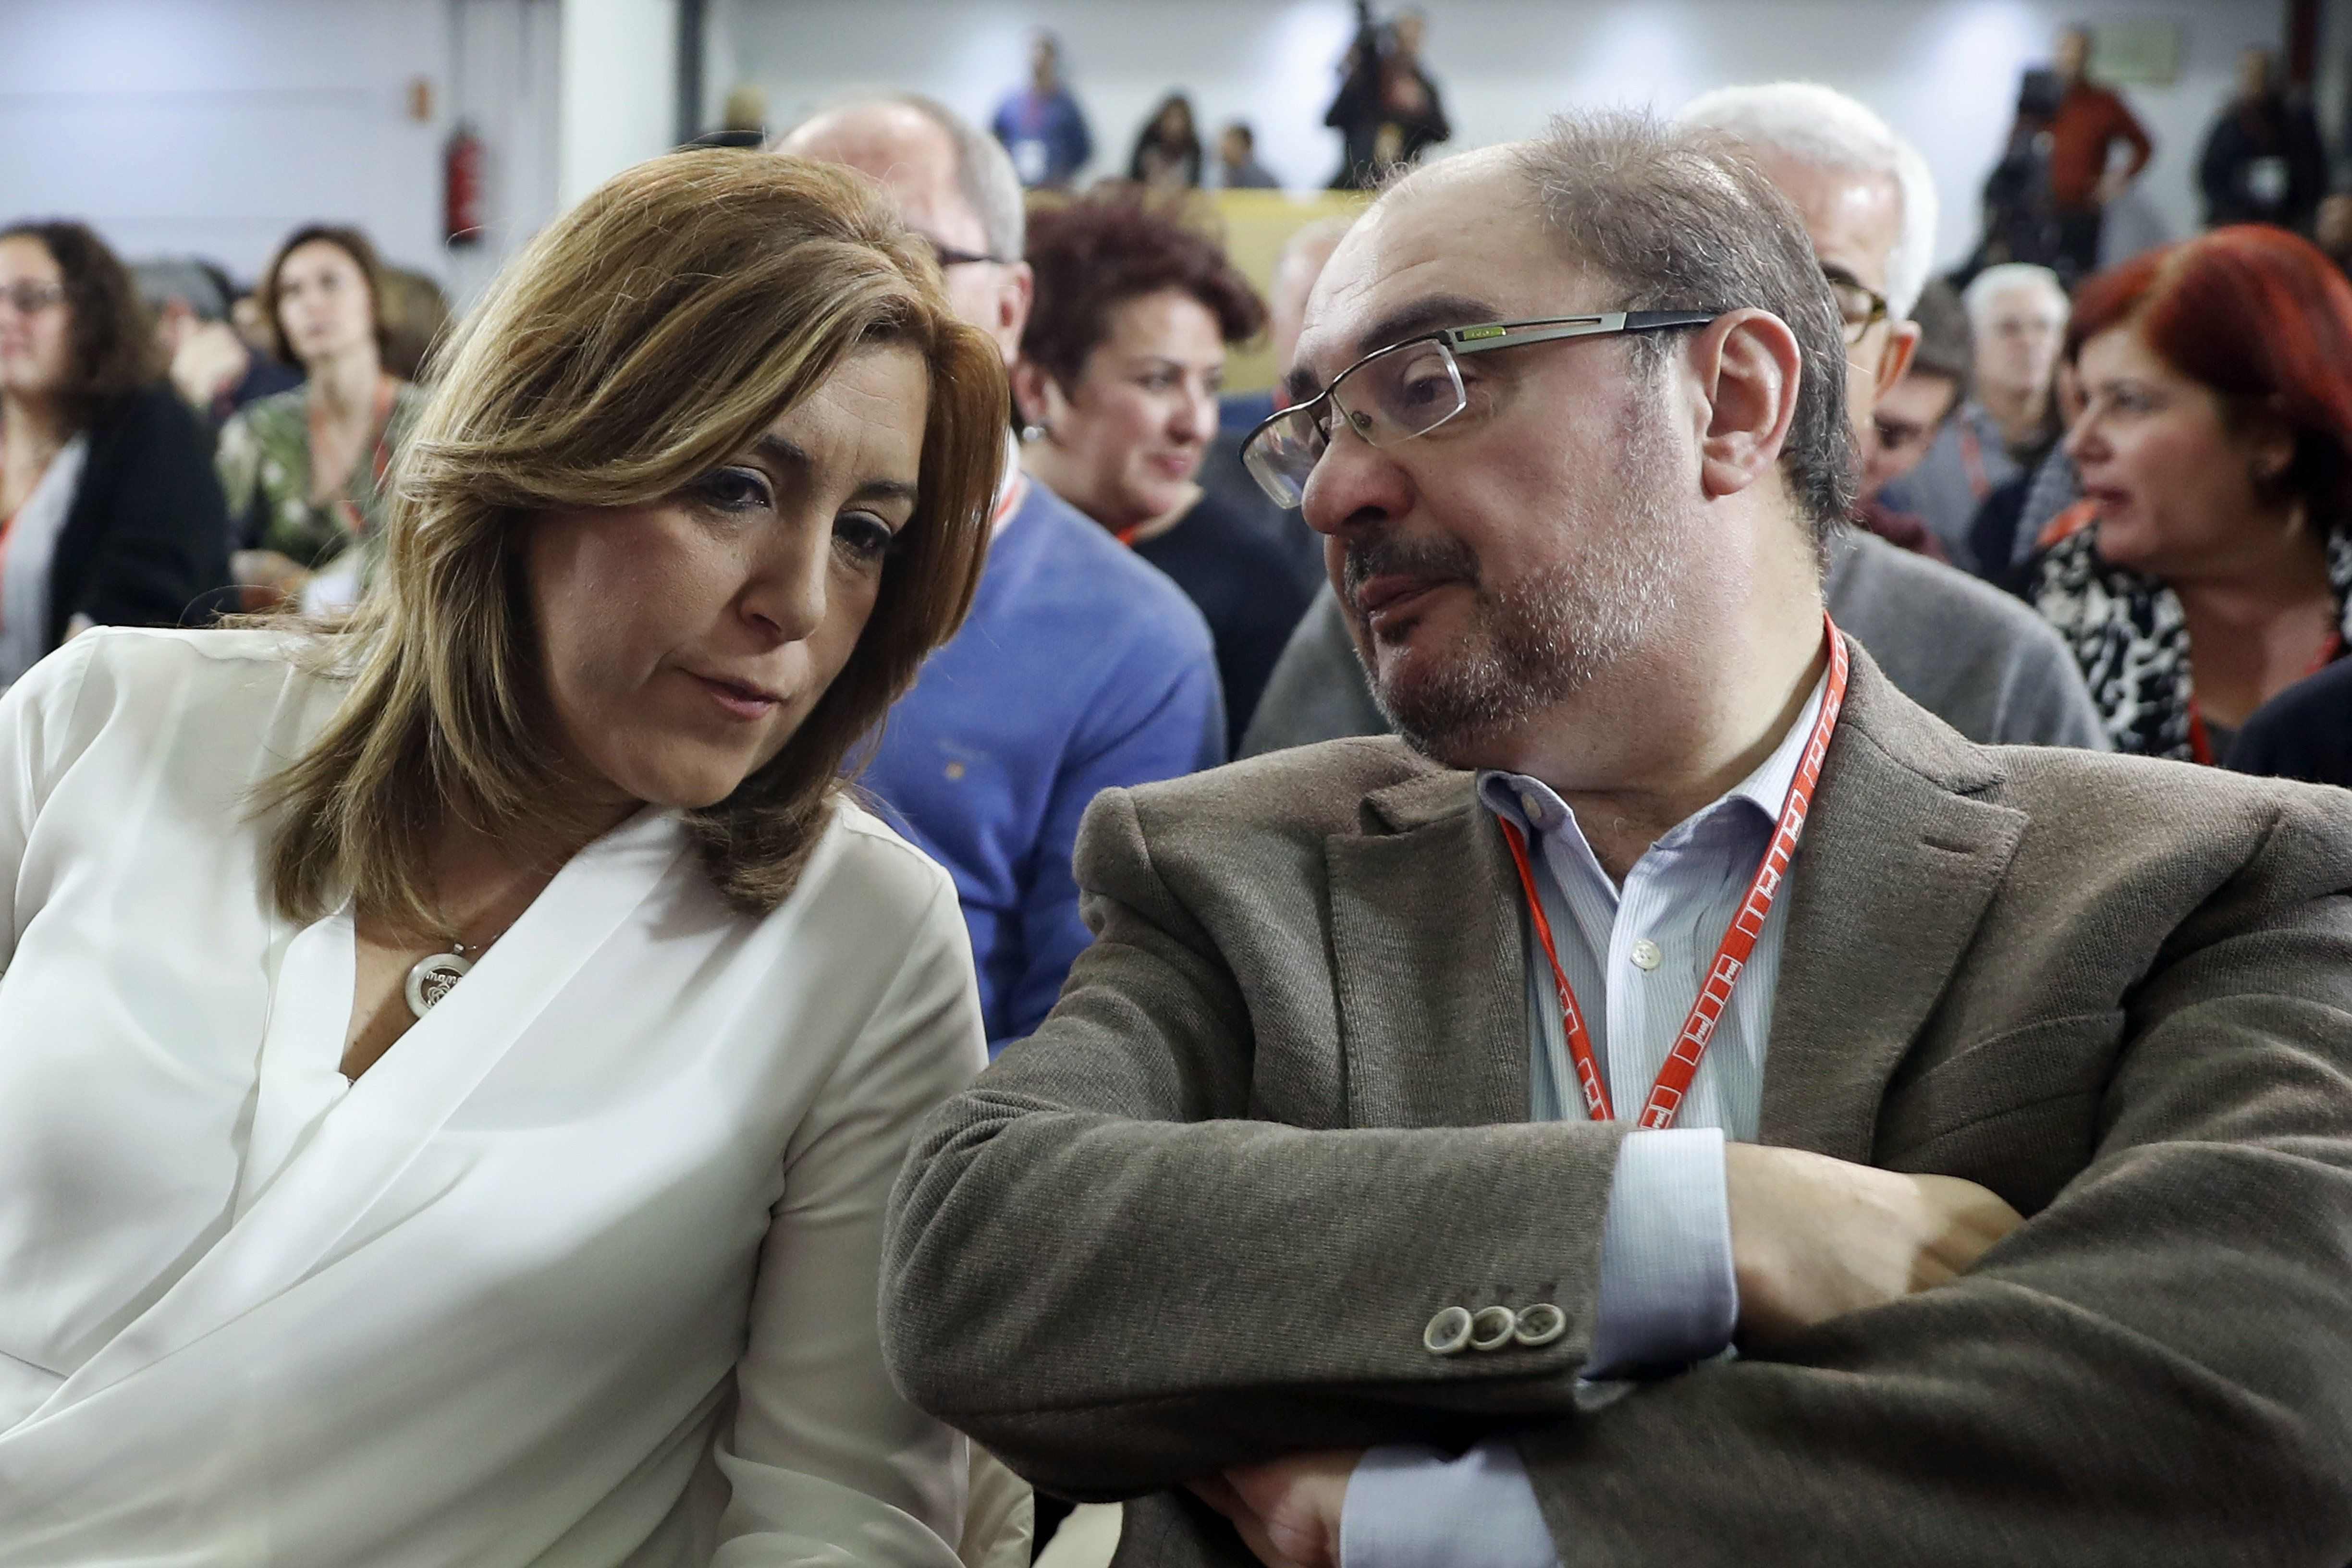 La gestora del PSOE exigeix "lleialtat i reflexió" per unir el partit